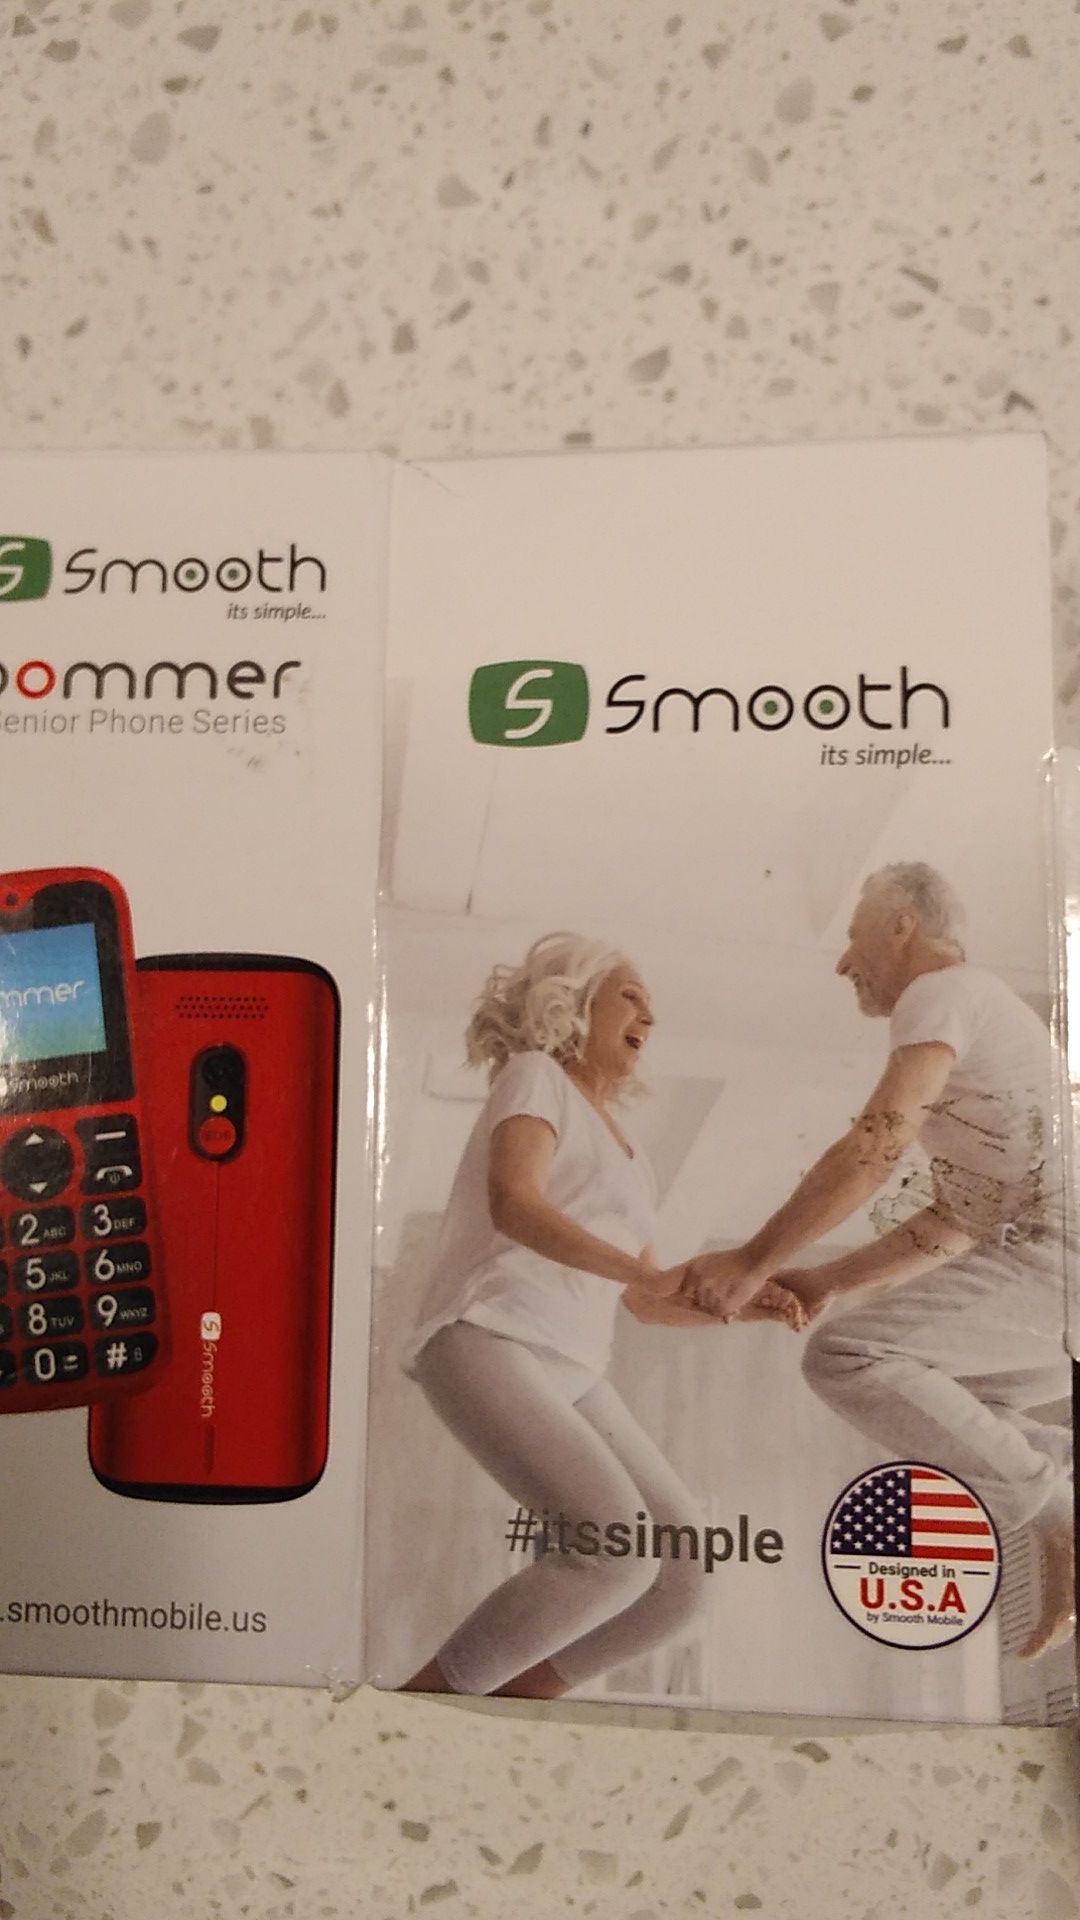 Boomer Senior Phone Series